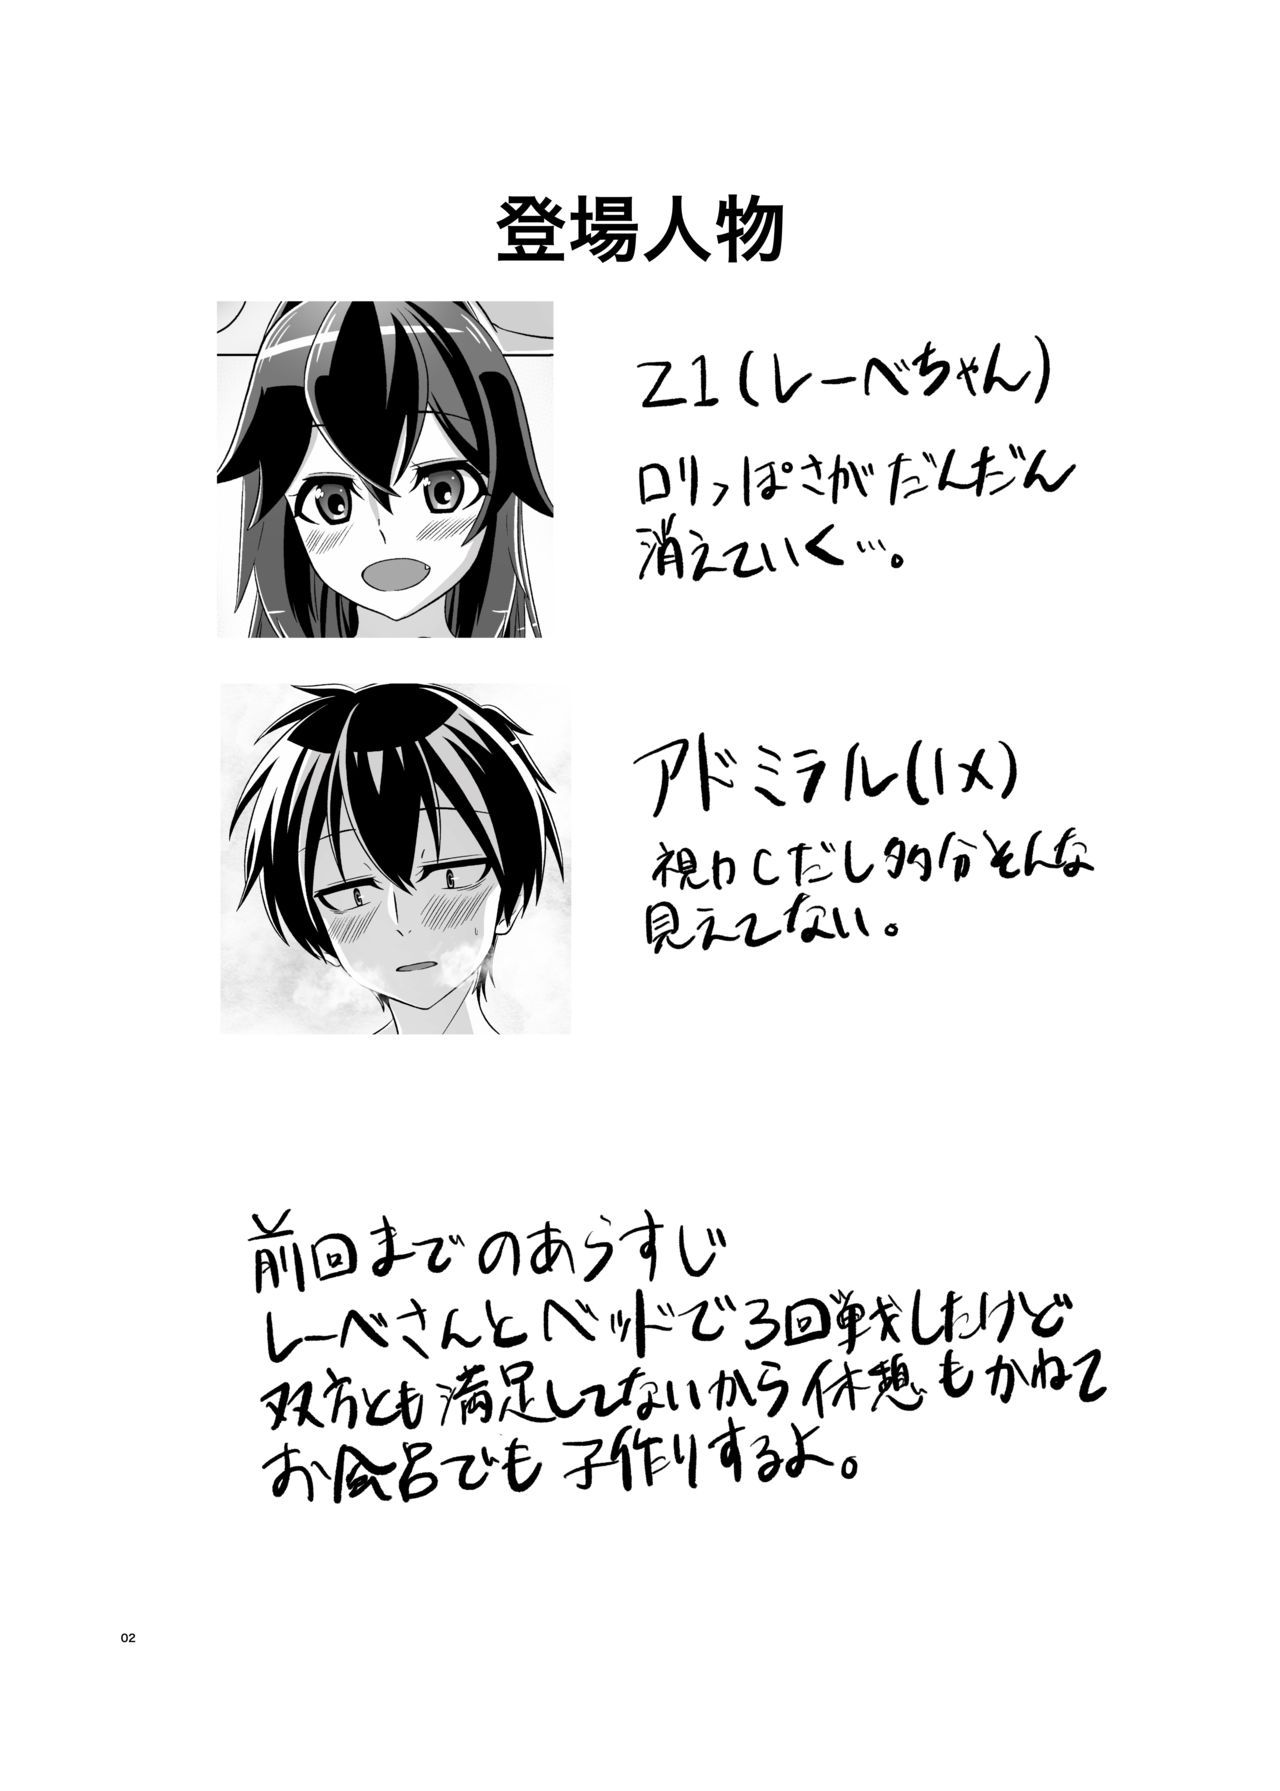 [Torutī-ya] Itsumo no yoru futari no yotogi⑵ (Warship Girls R) page 3 full